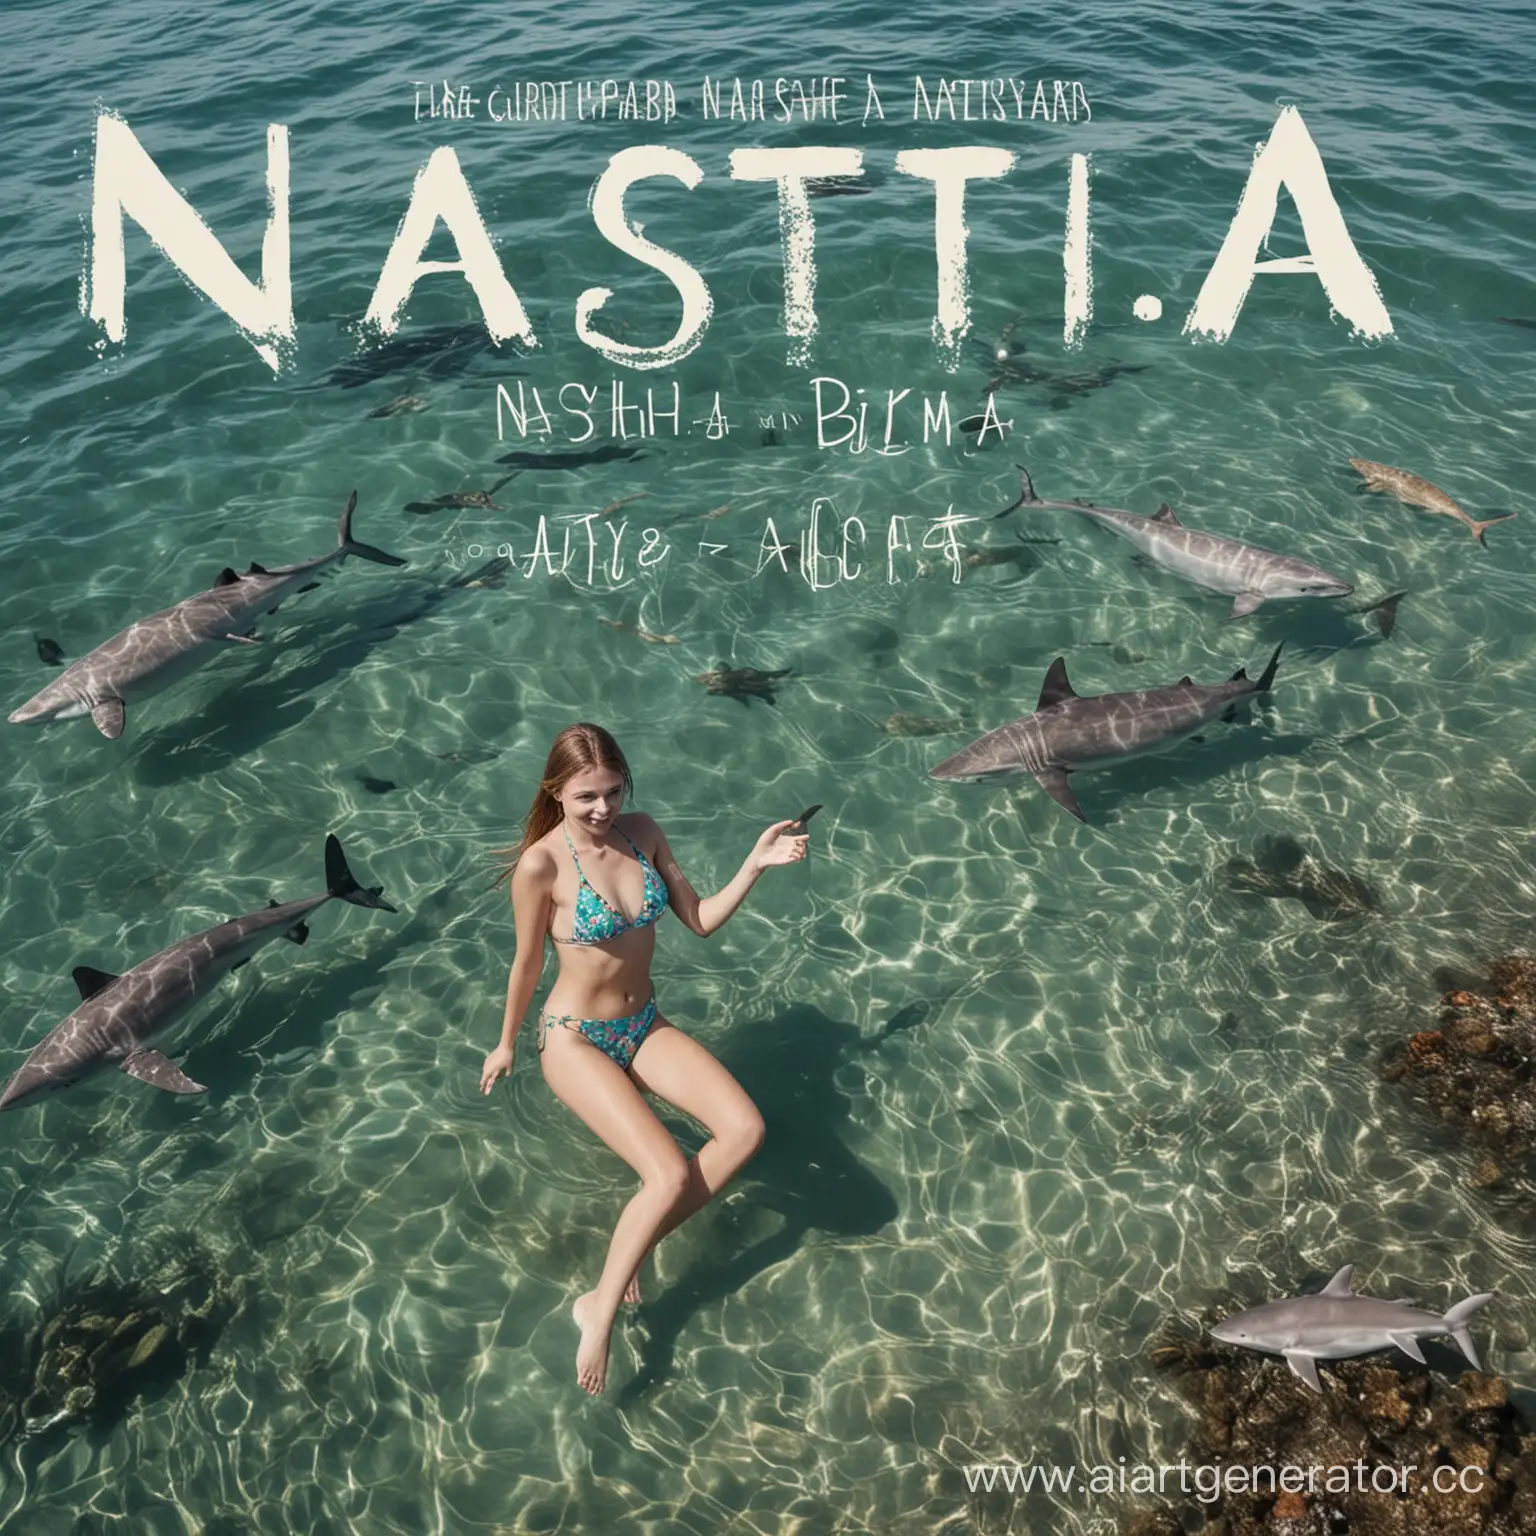 Девушка в бикини и над ней написано имя Настя. Она плавает в море и в рядом с ней плавают разные акулы и крабы. Которые заплывают на неё